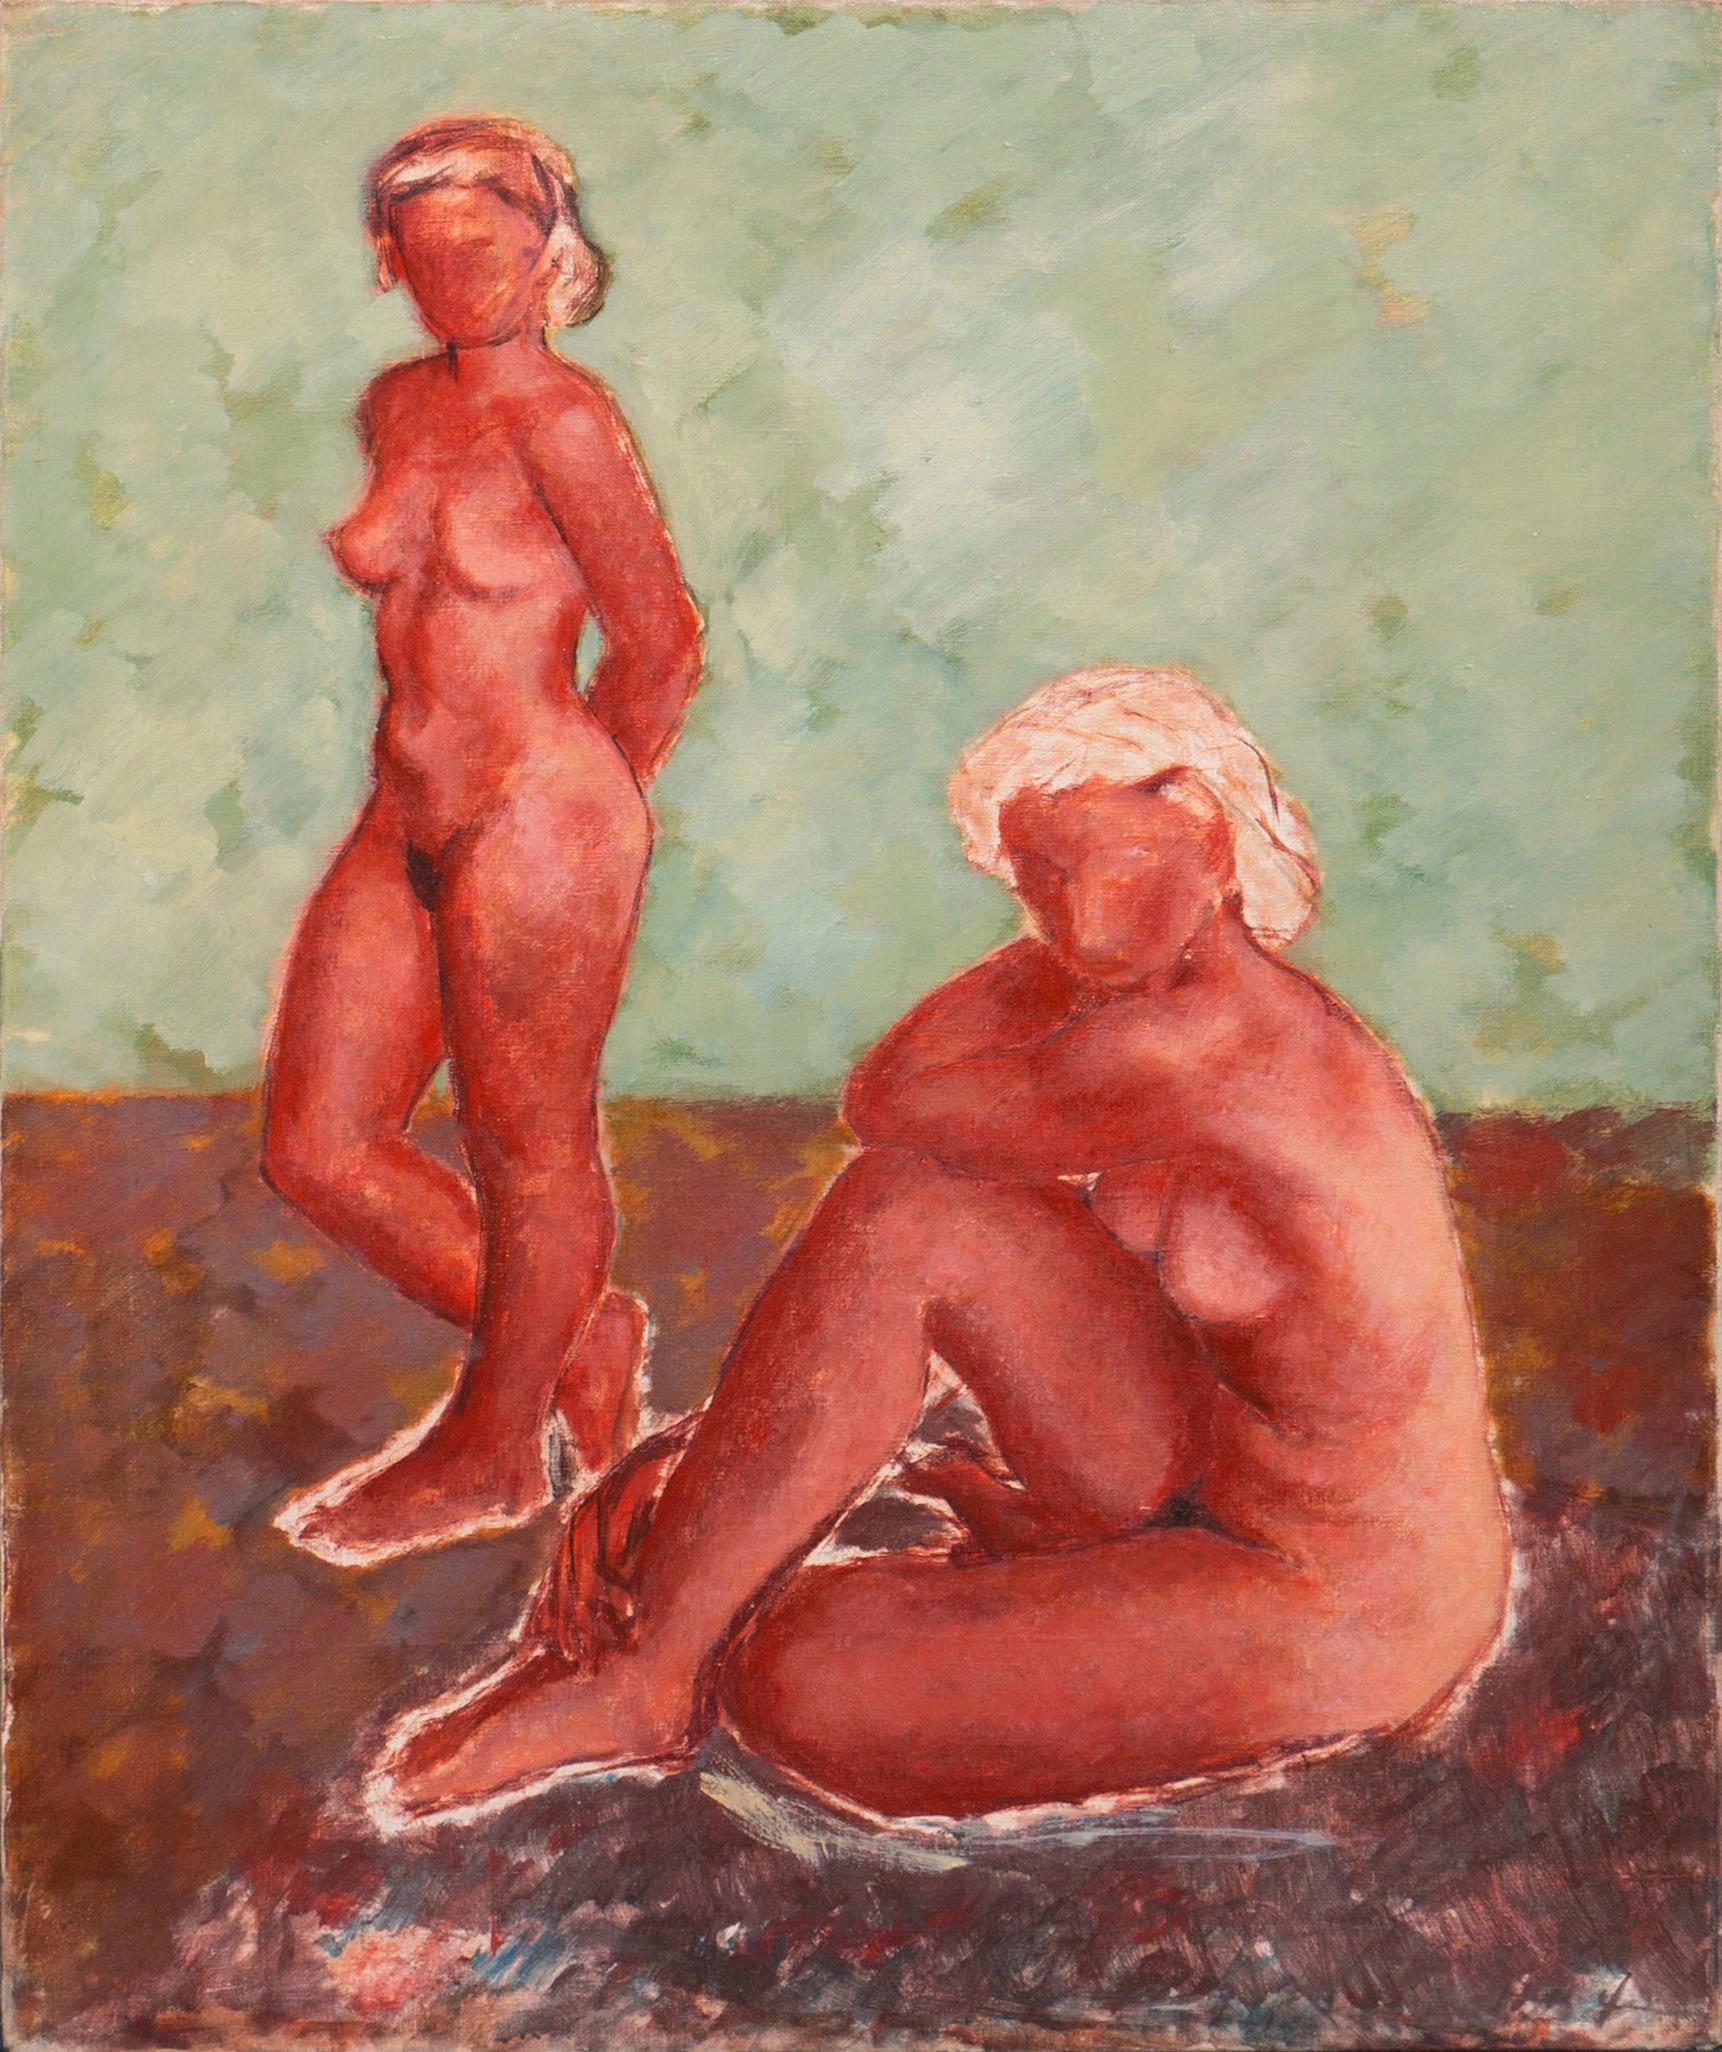 Figurale Studie, Rost und Jade", Paris, Grønningen, Dänisches Nationalmuseum